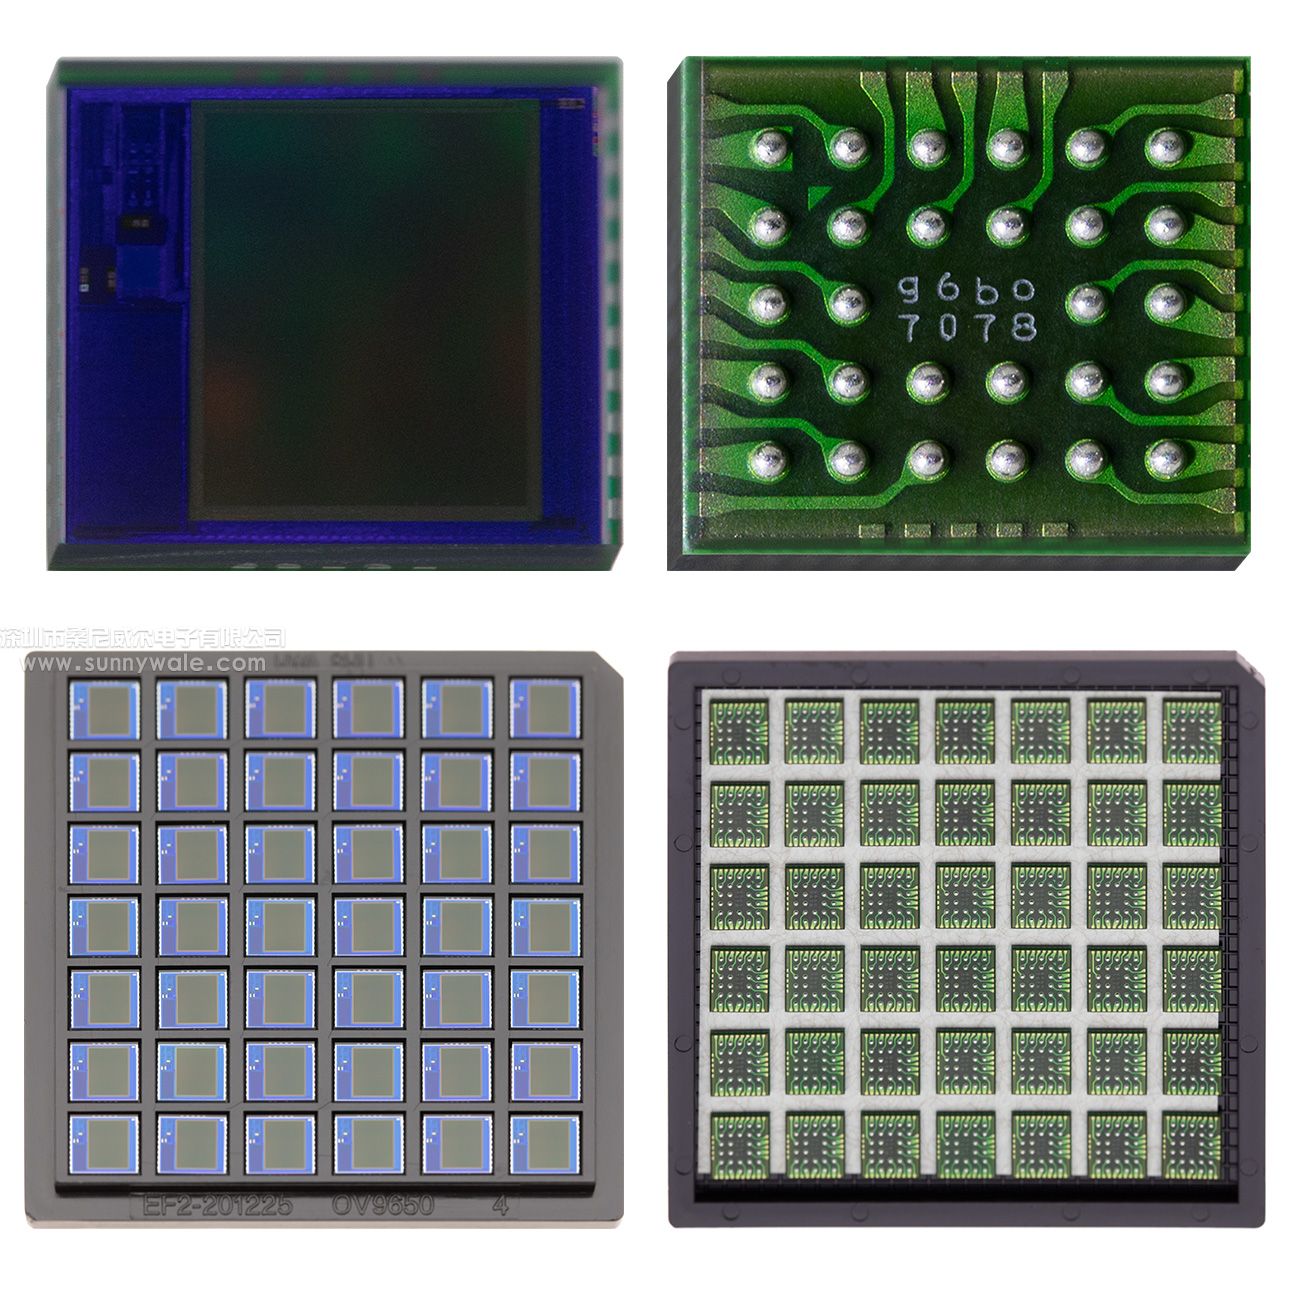 彩色CMOS,SXGA传感器(130万像素)